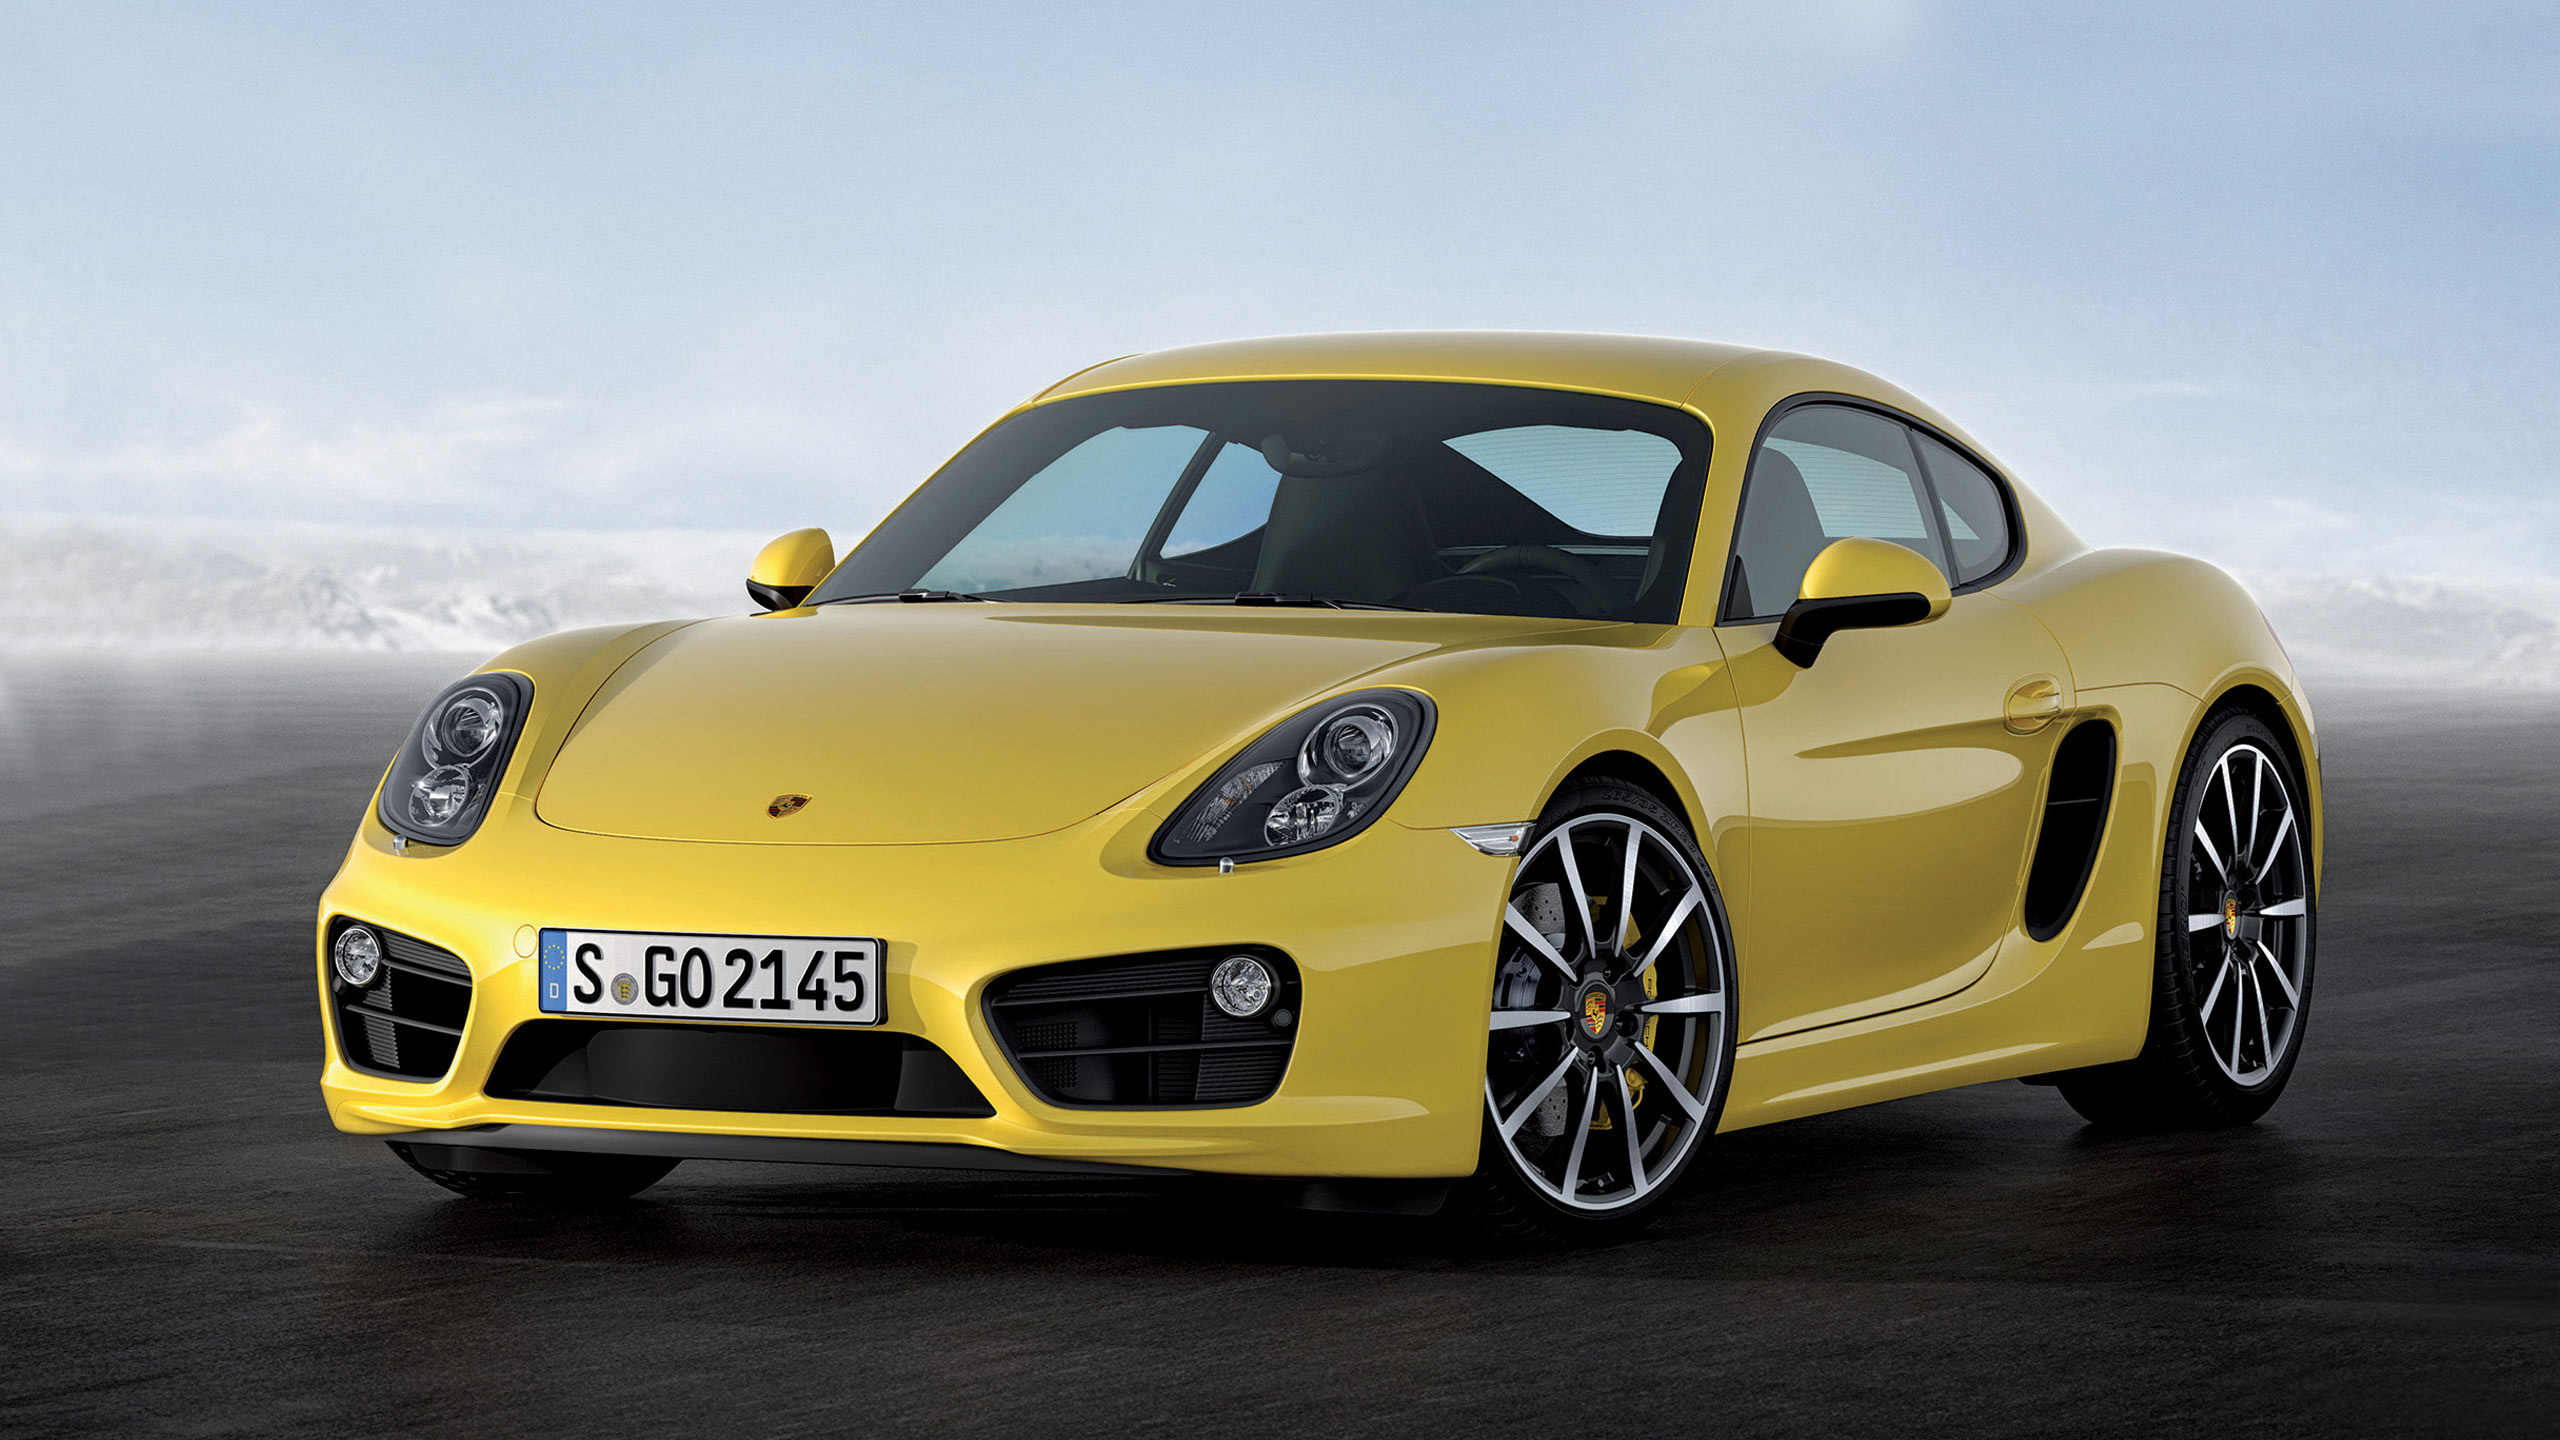 Yellow Porsche 911 on White Background. Wallpaper in 2560x1440 Resolution